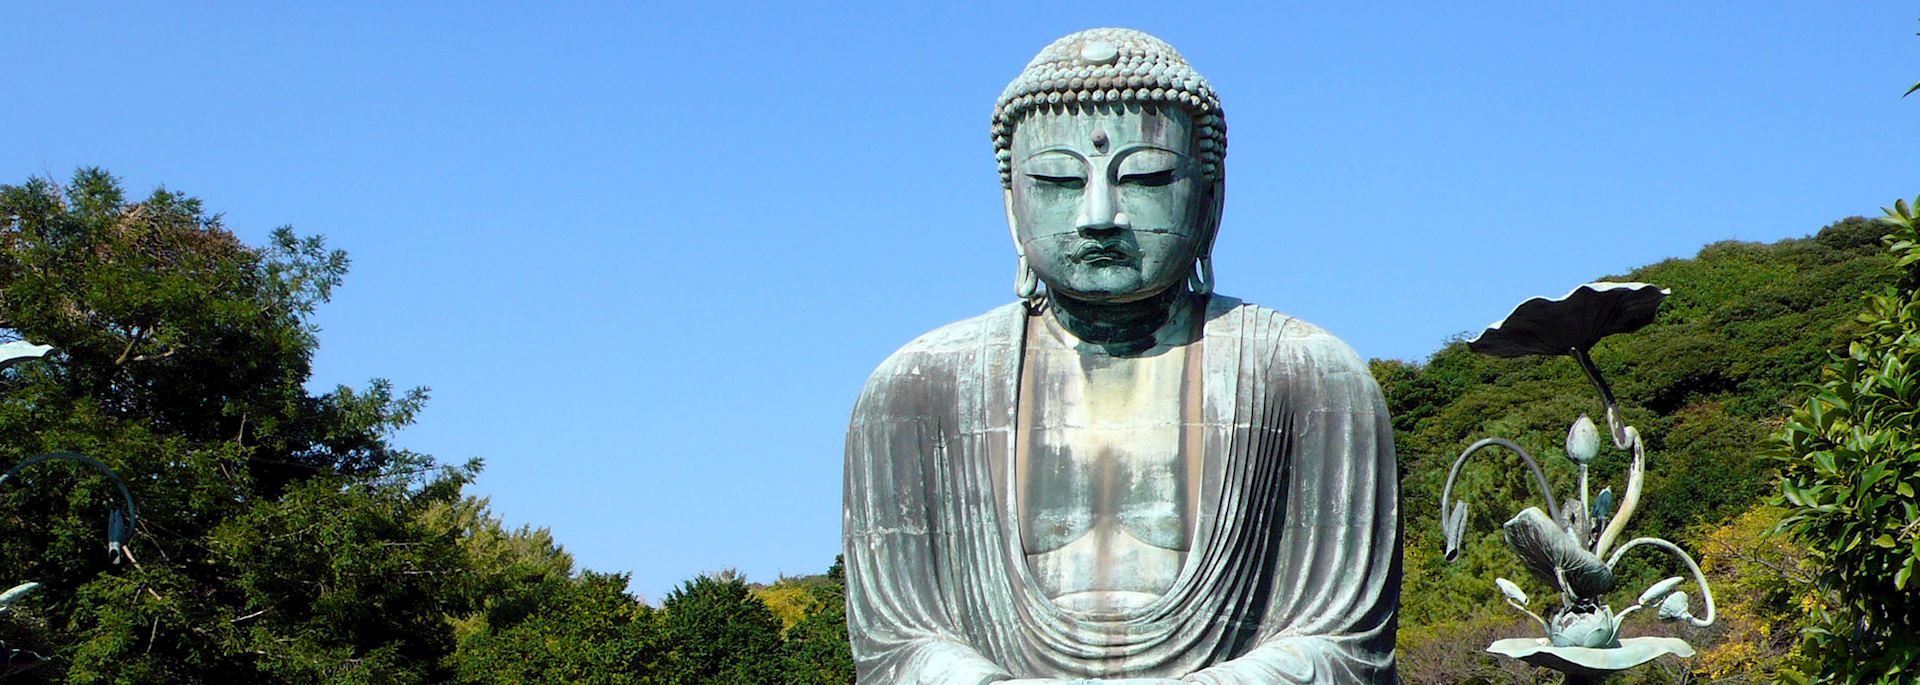 Great Bronze Buddha, Kamakura